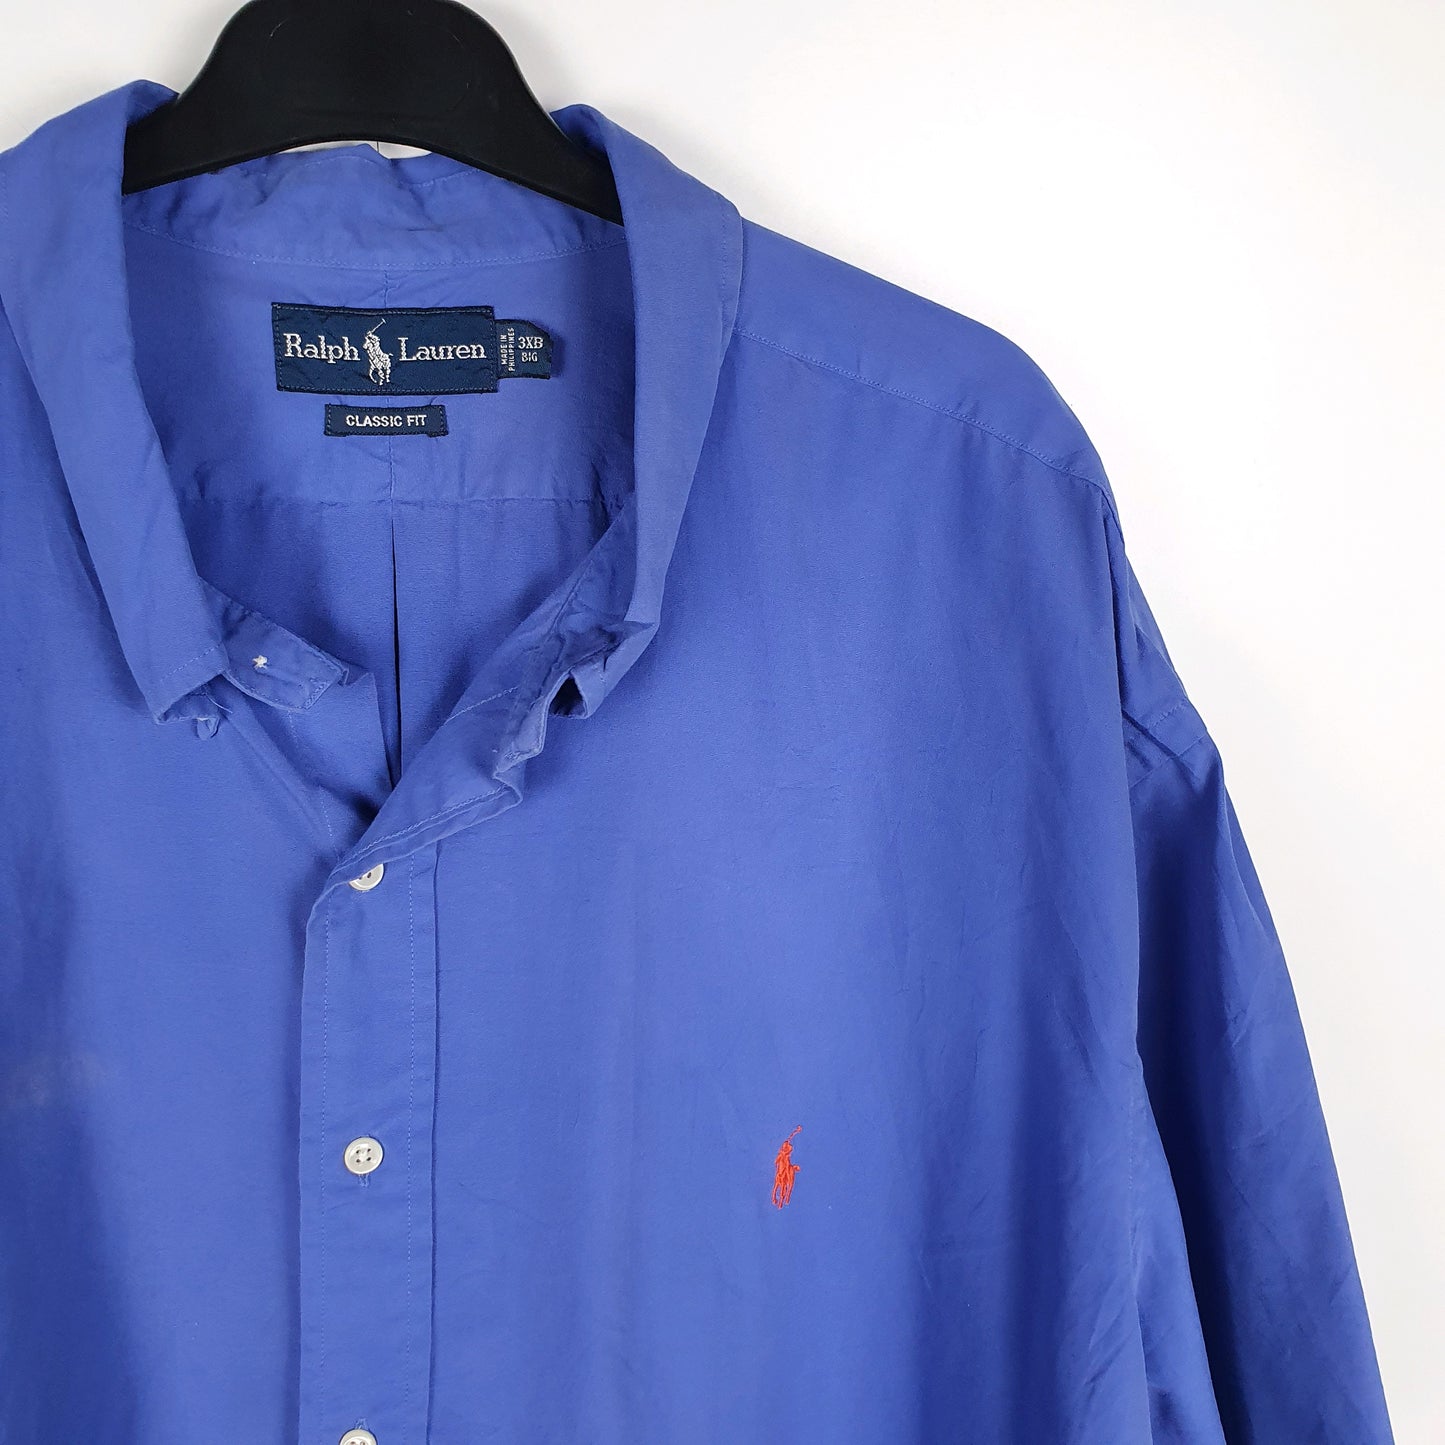 Polo Ralph Lauren Short Sleeve Classic Fit Shirt